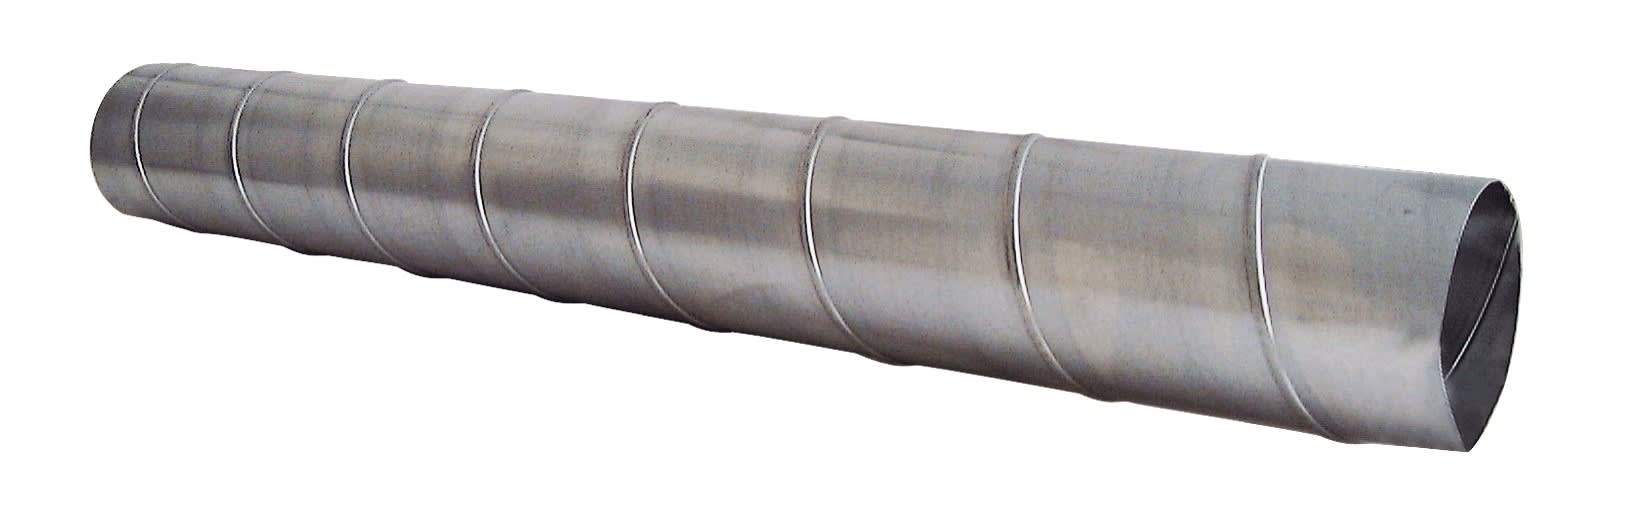 S&P - Conduit spiralé acier galvanisé, D 125 mm, longueur 2 m